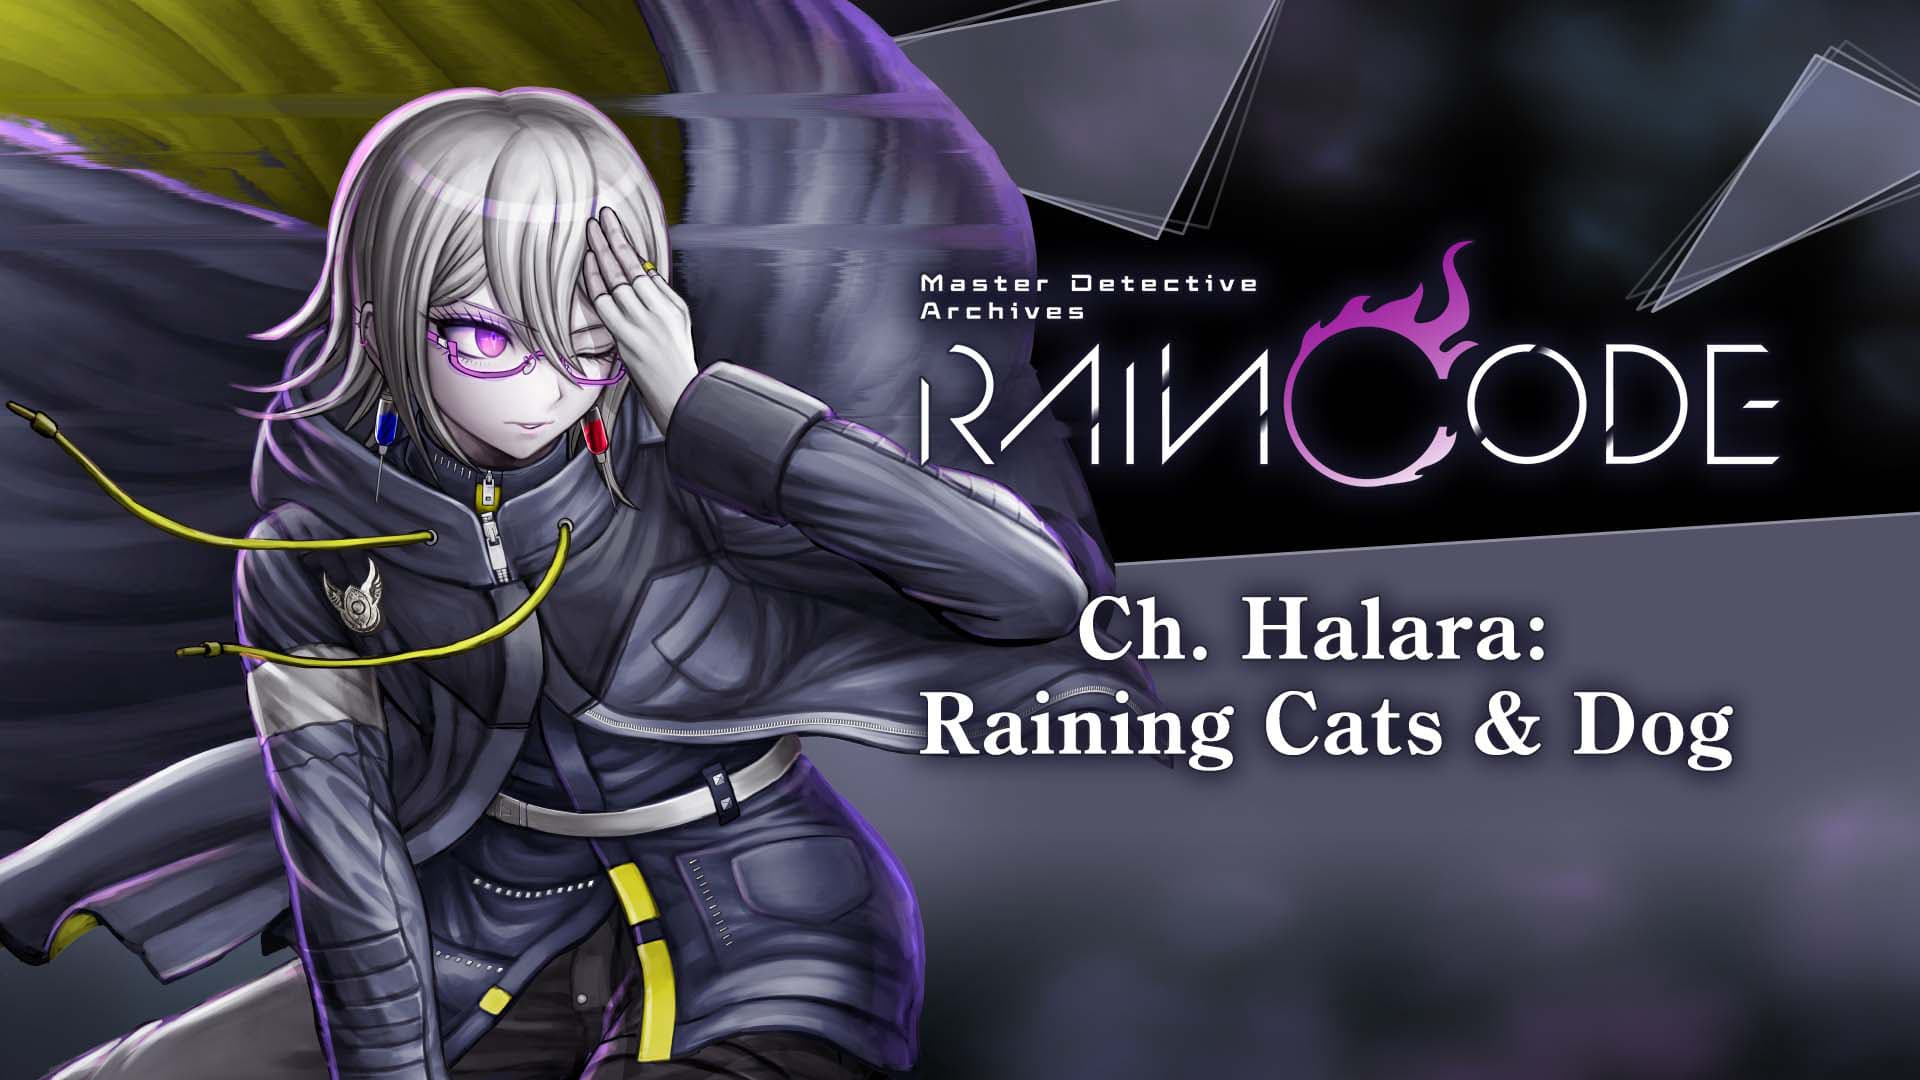 Ch. Halara: Raining Cats & Dog